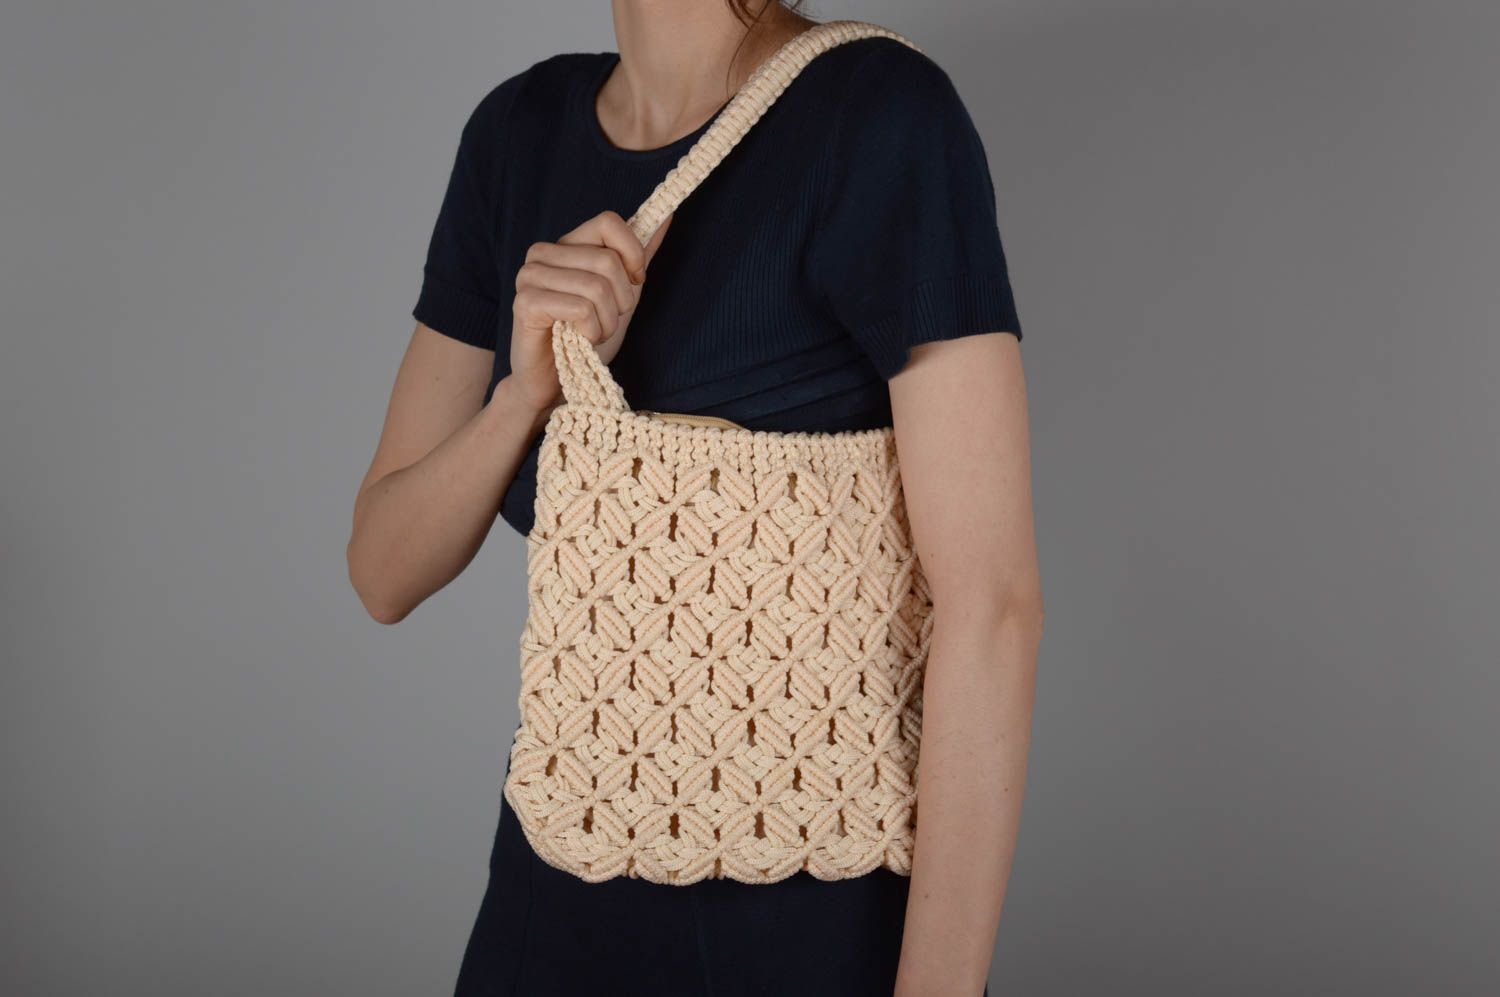  Maosanyue Handbag Simple Shoulder Bag Handbags